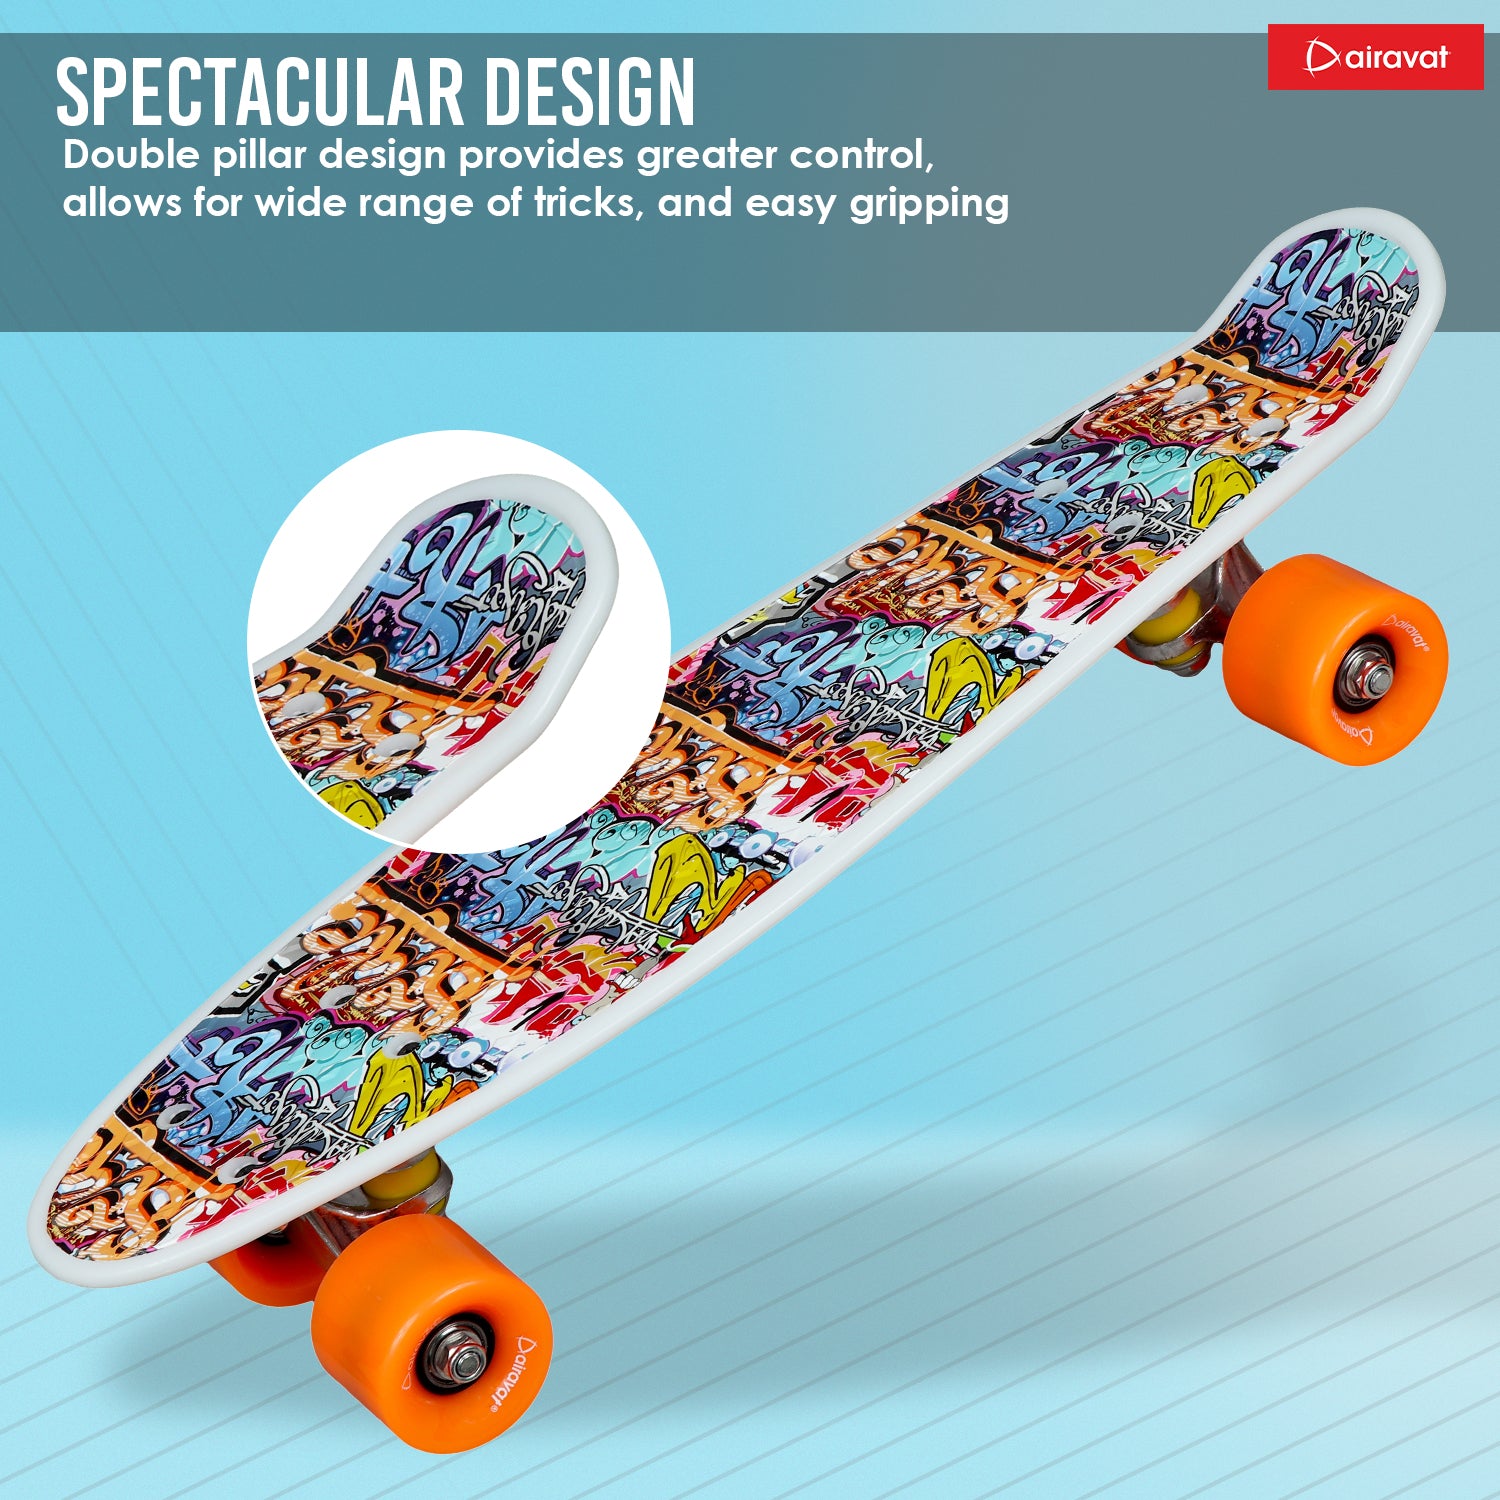 7811-skateboard-style-5-spectacular-design